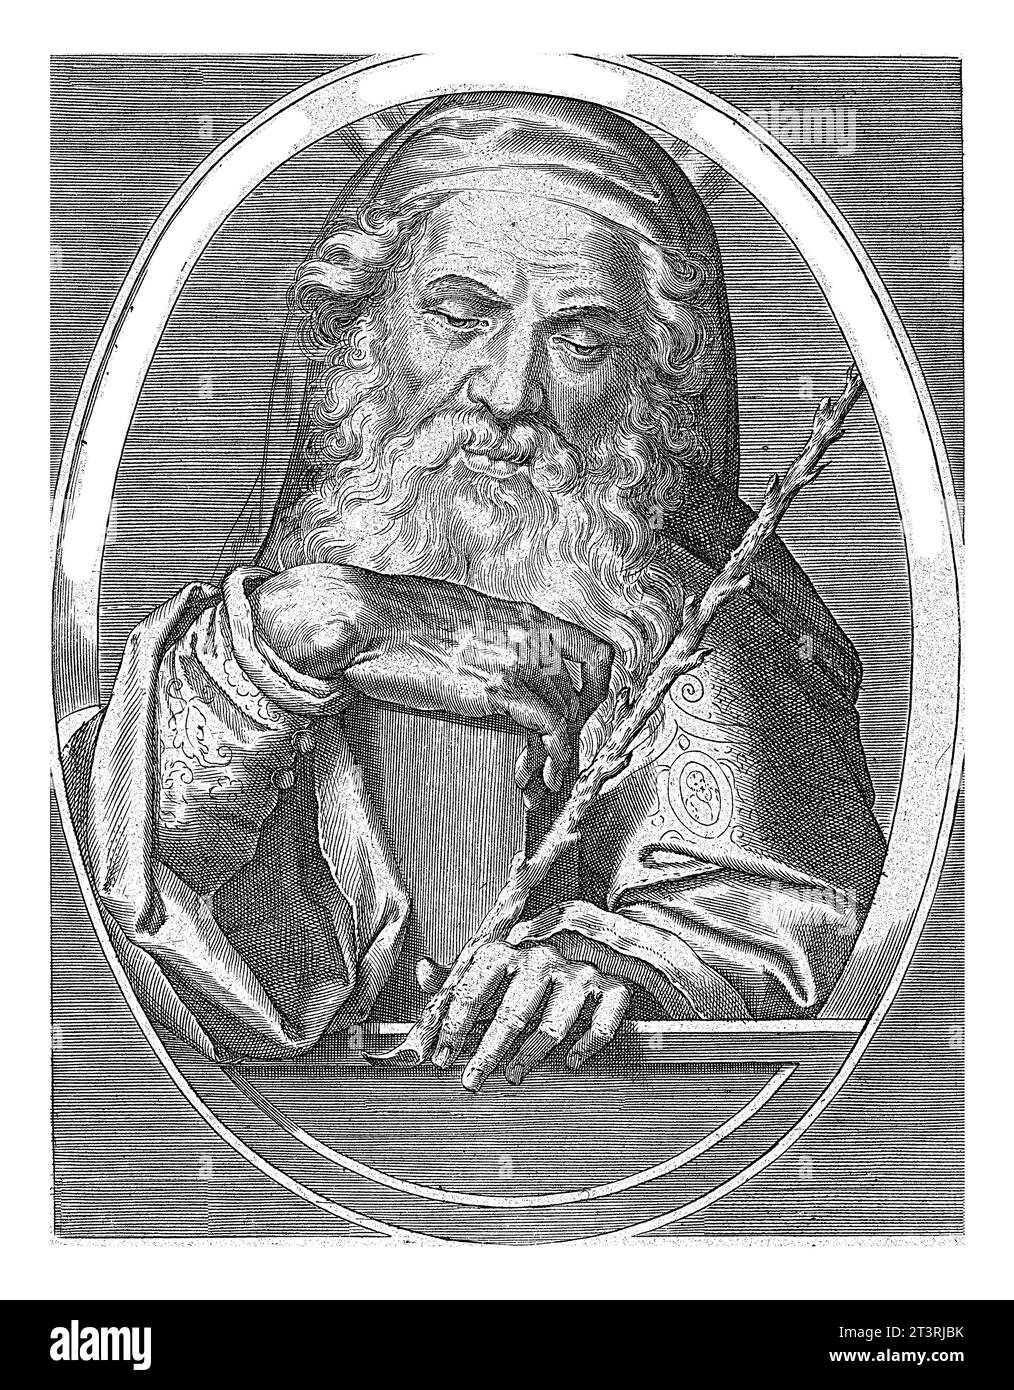 Mozes, Cornelis Galle (I), nach Jan van der Straet, 1613 Moses als alter Mann mit den Steintafeln und einem Stab, in Oval mit lateinischer Inschrift. Strahlen o Stockfoto